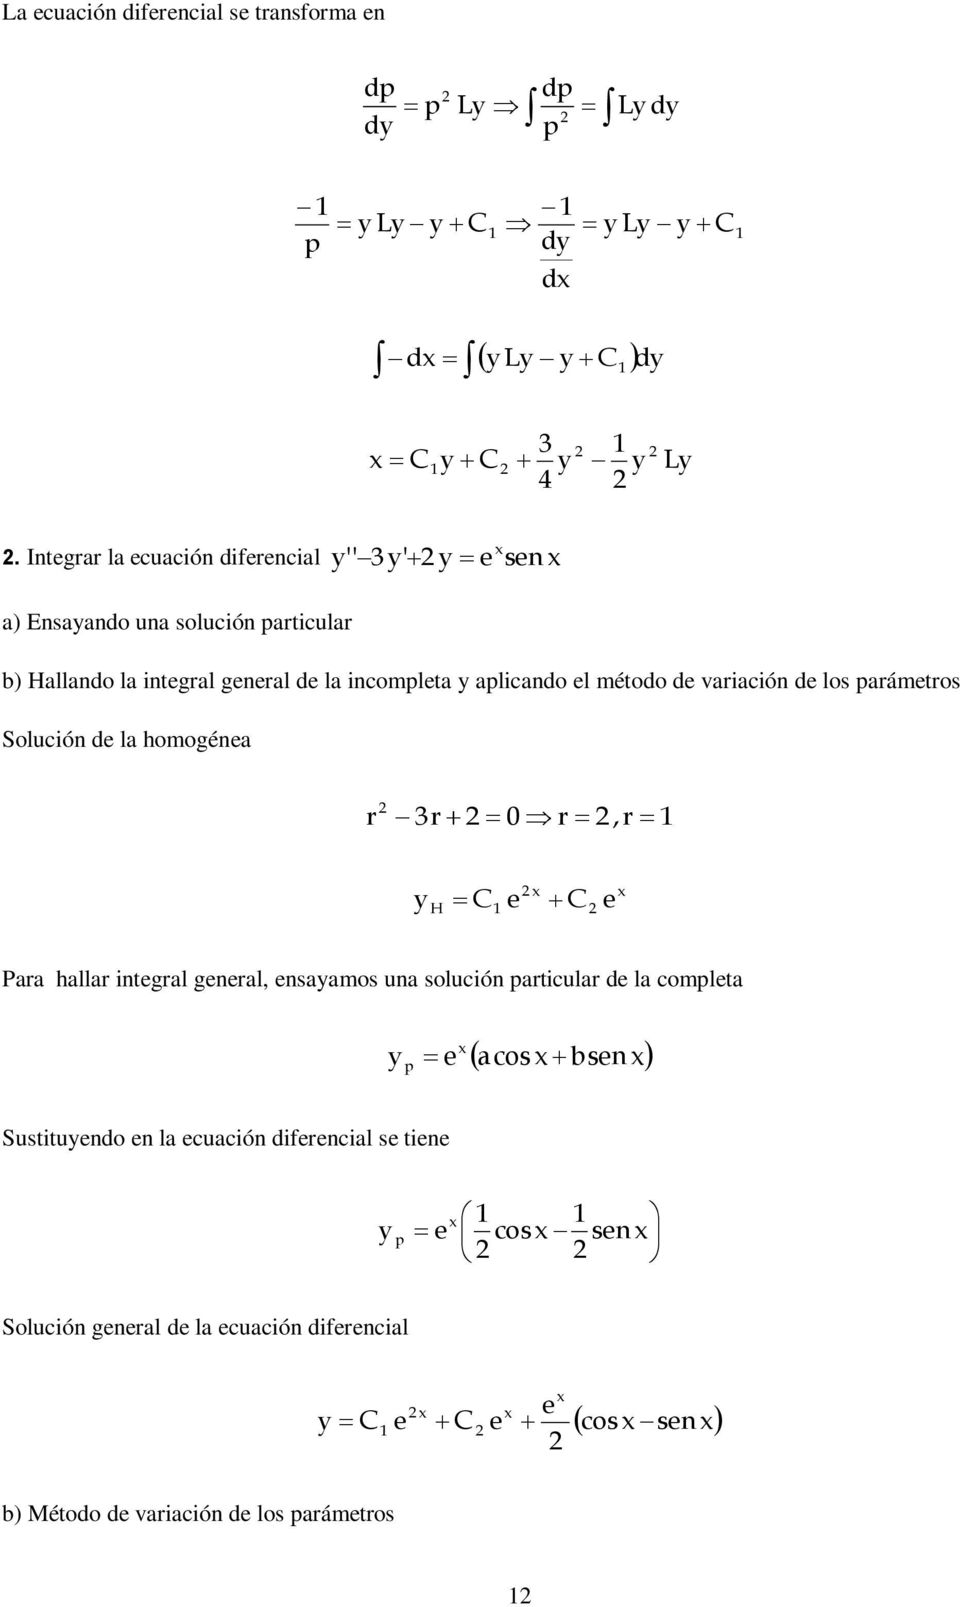 aplicando l método d variación d los parámtros Solución d la homogéna r r r,r H Para hallar intgral gnral, nsaamos una